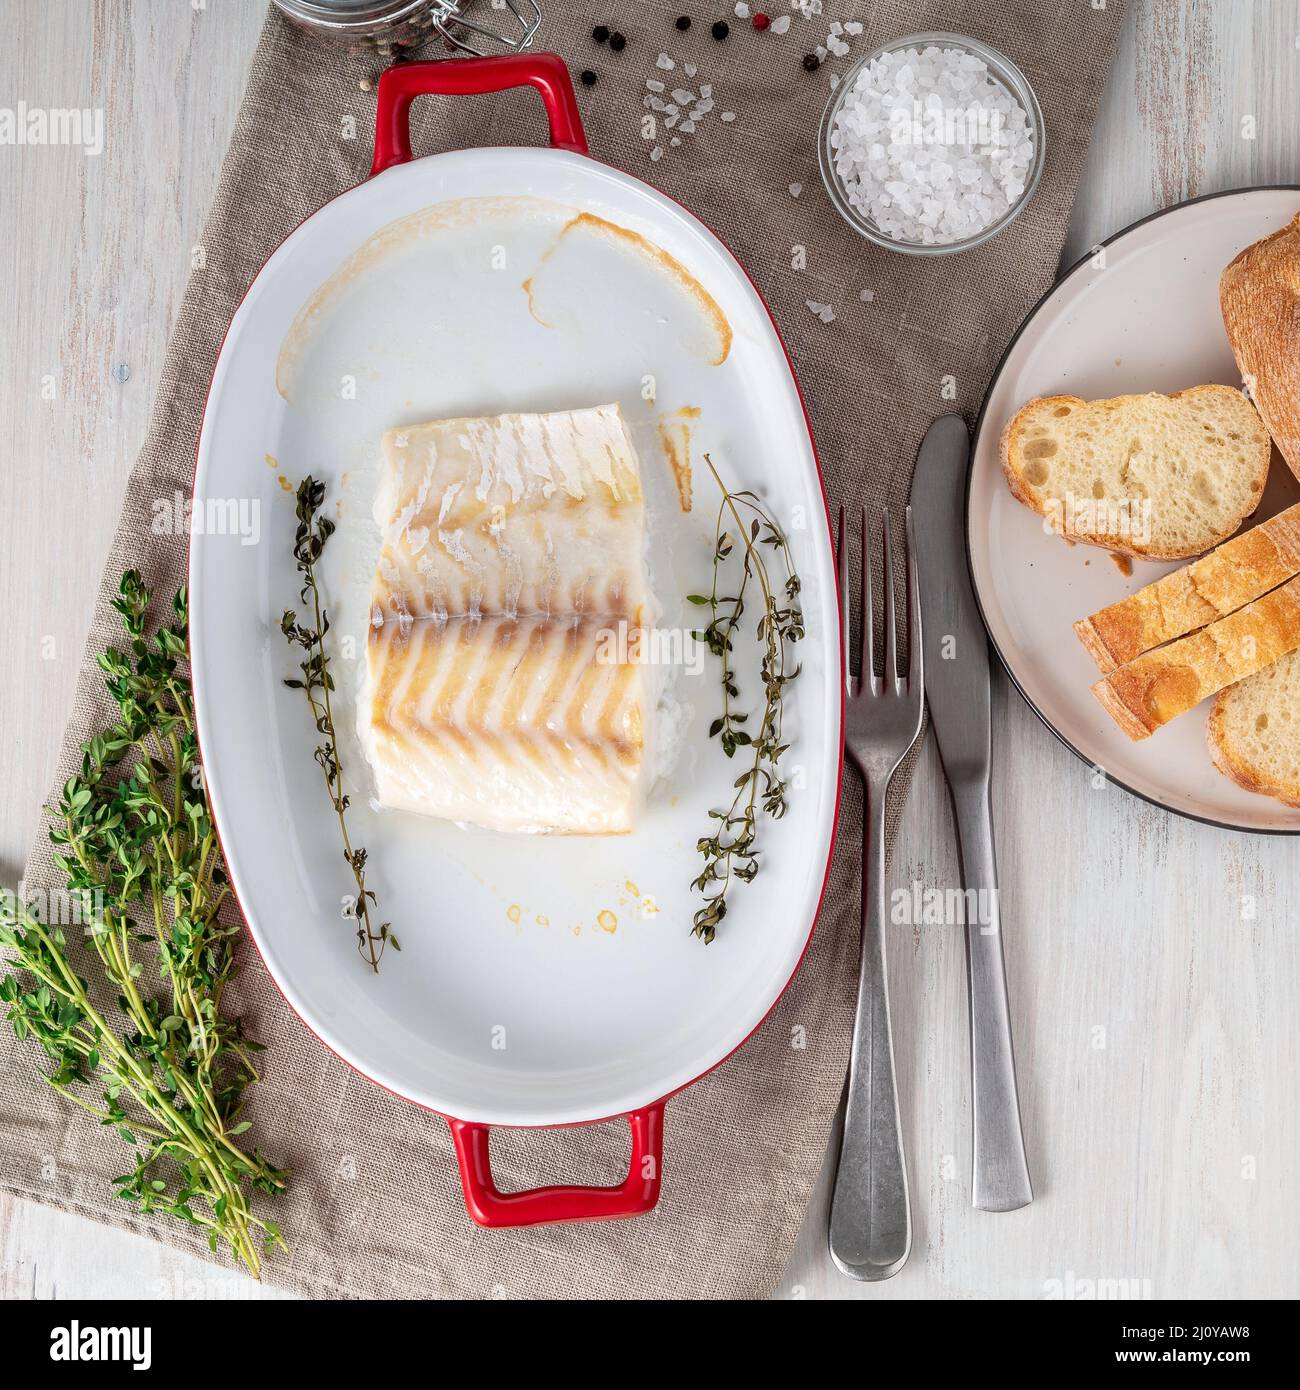 Filet de poisson de morue, fraîchement cuit au four avec du thym dans un plat en porcelaine pour la cuisson, pain sur une assiette, sel et poivre, bois blanc Banque D'Images